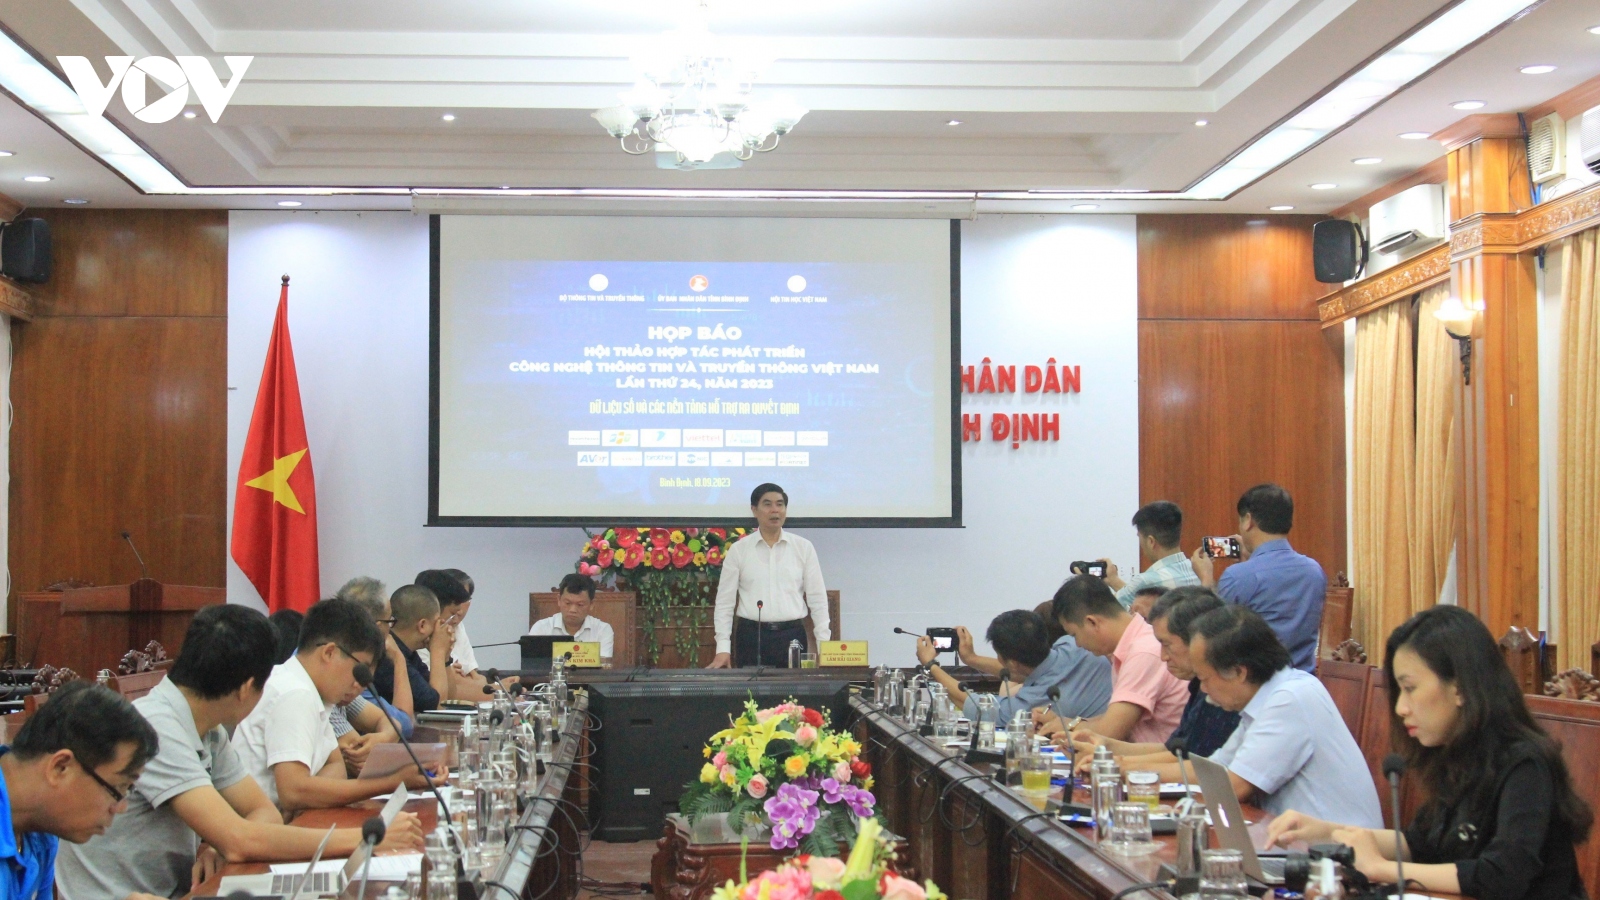 Hội thảo và hợp tác phát triển CNTT&TT Việt Nam lần thứ 24 diễn ra tại Bình Định